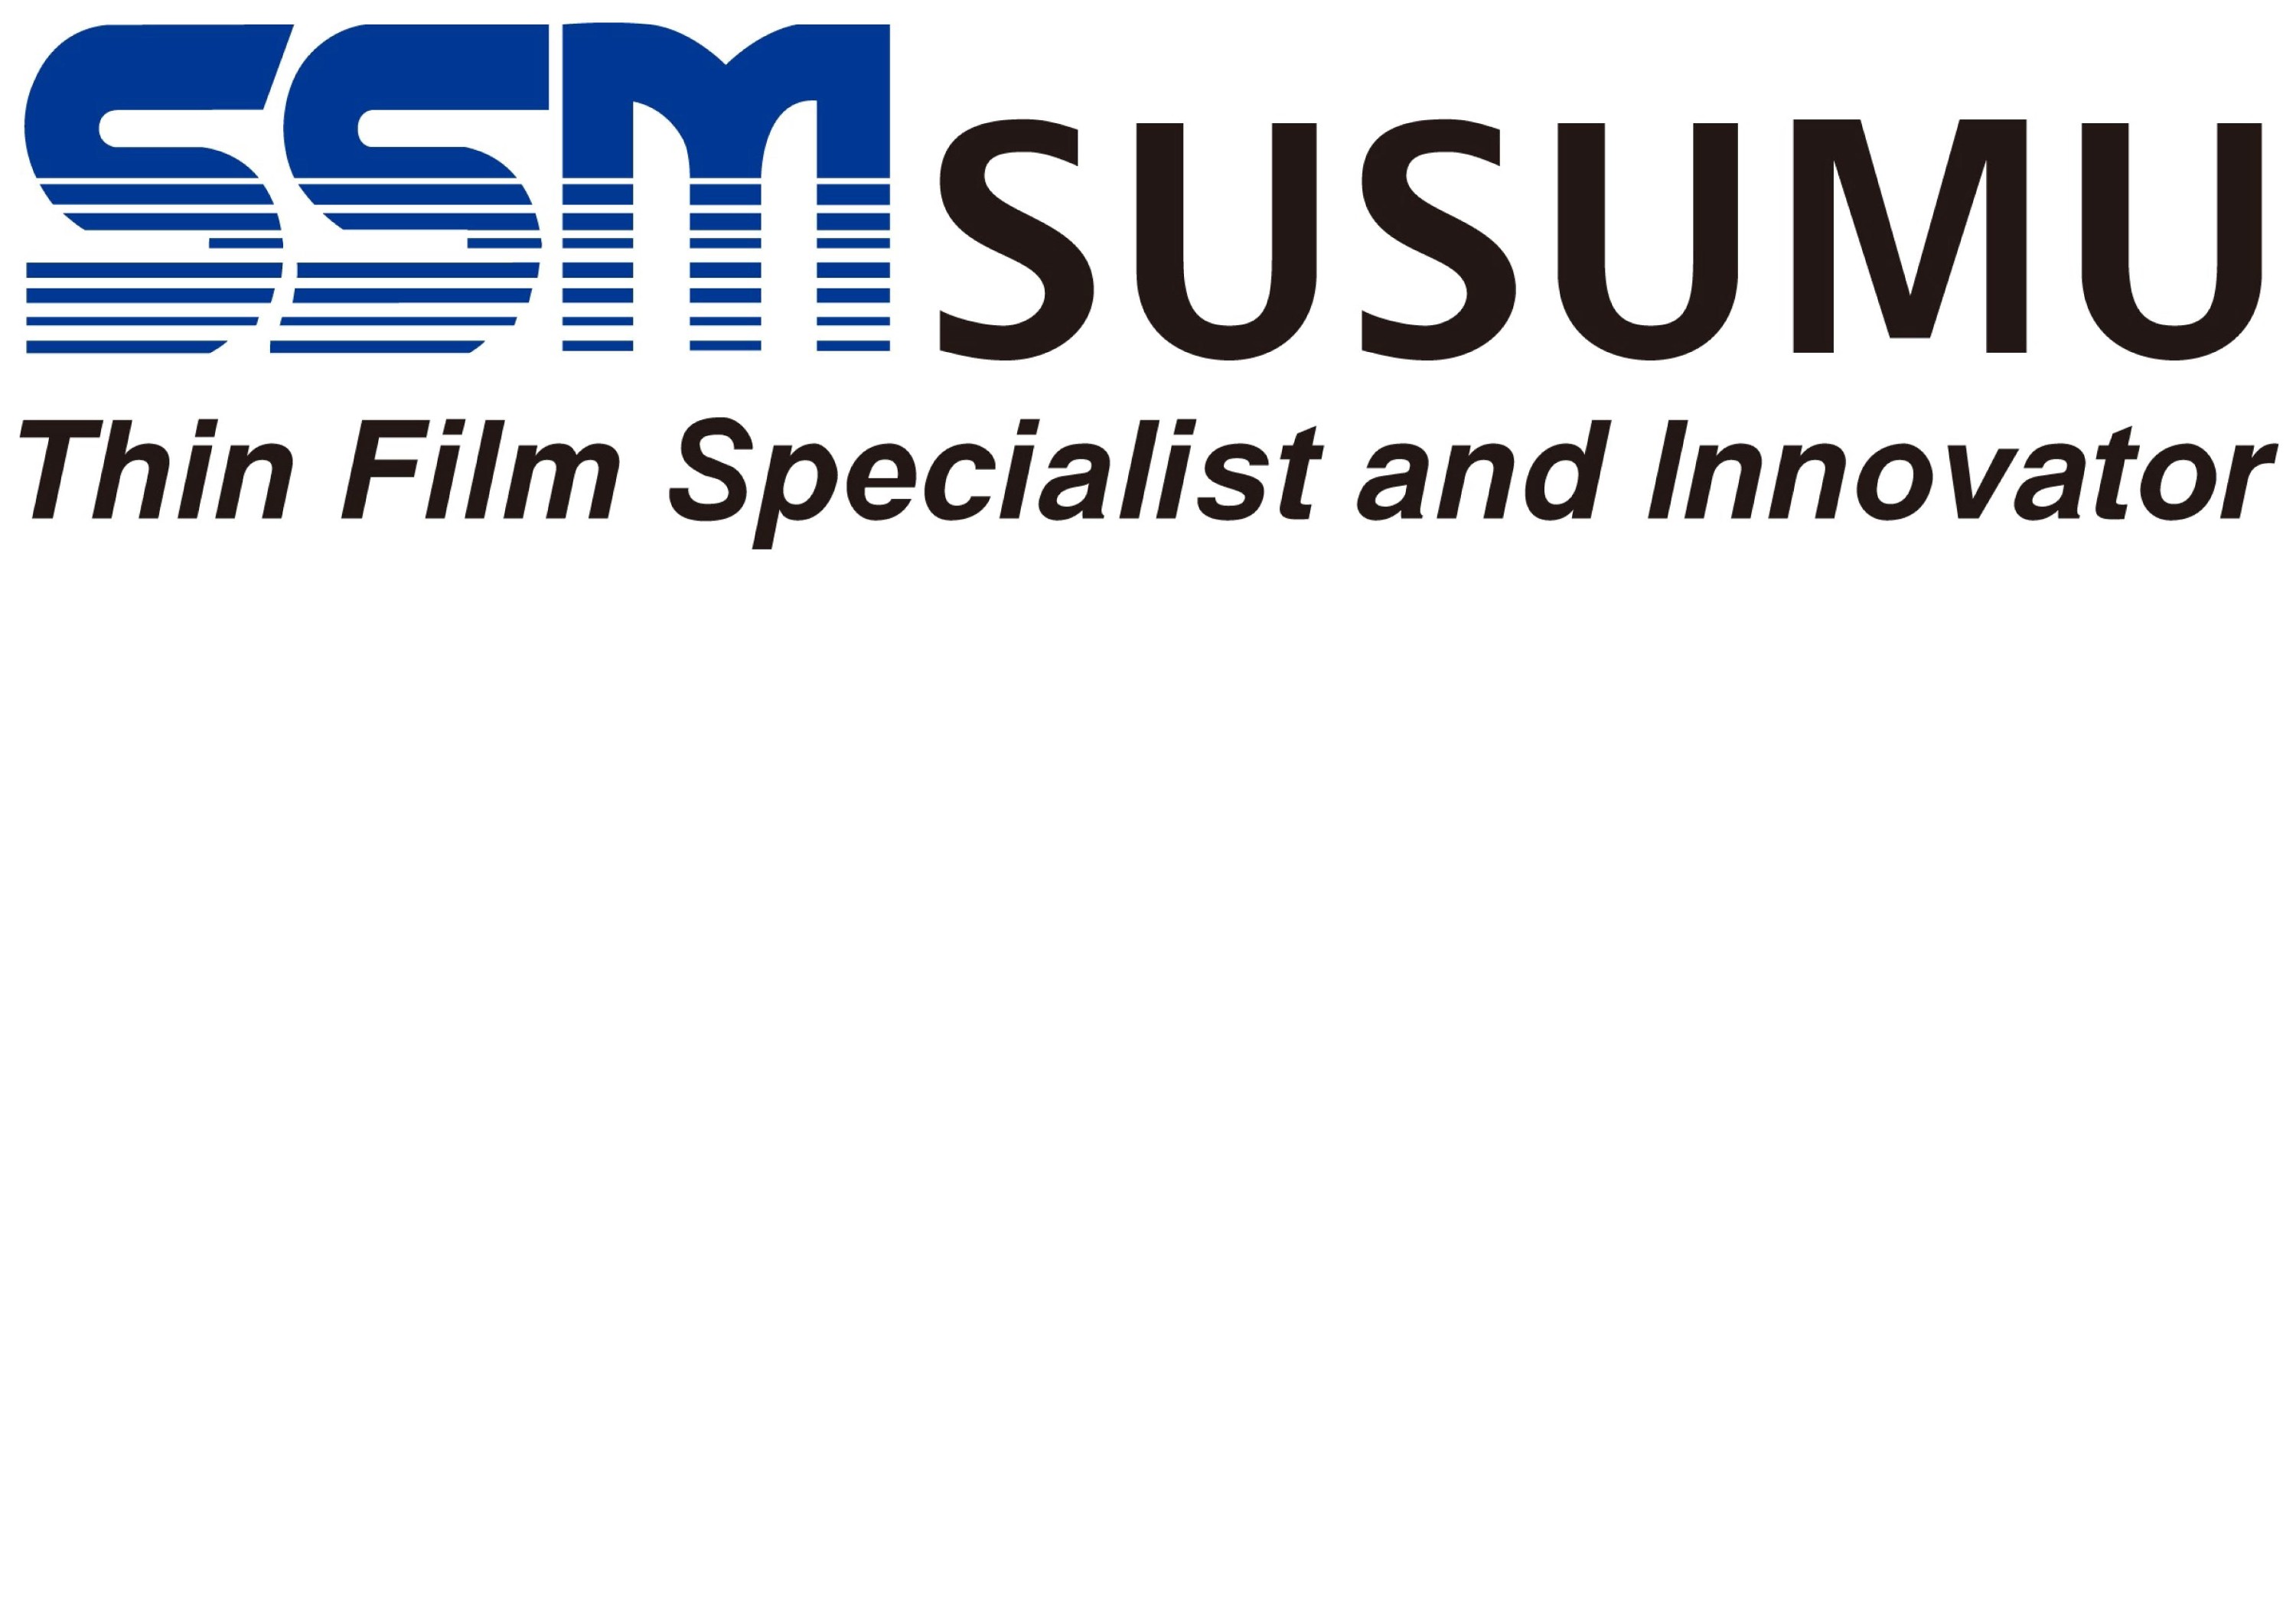 Logo SSM SUSUMU